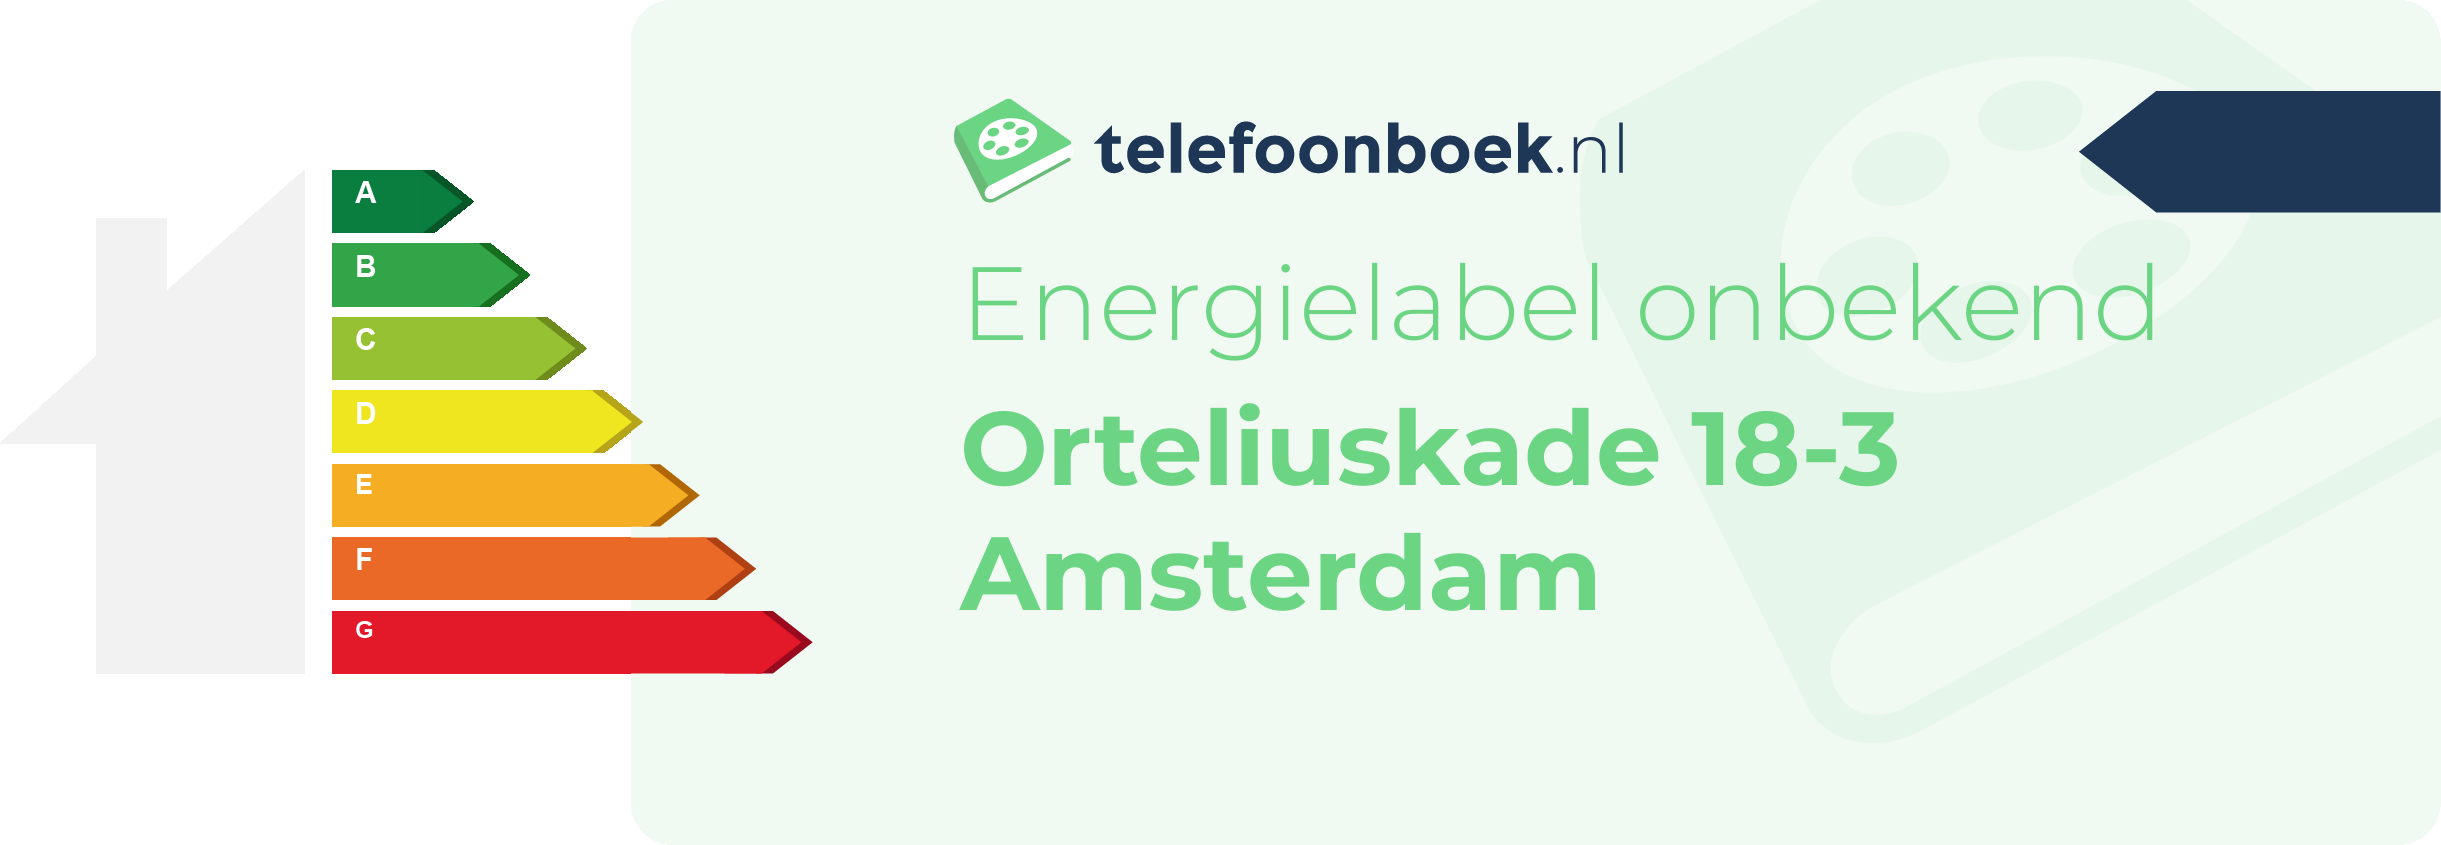 Energielabel Orteliuskade 18-3 Amsterdam